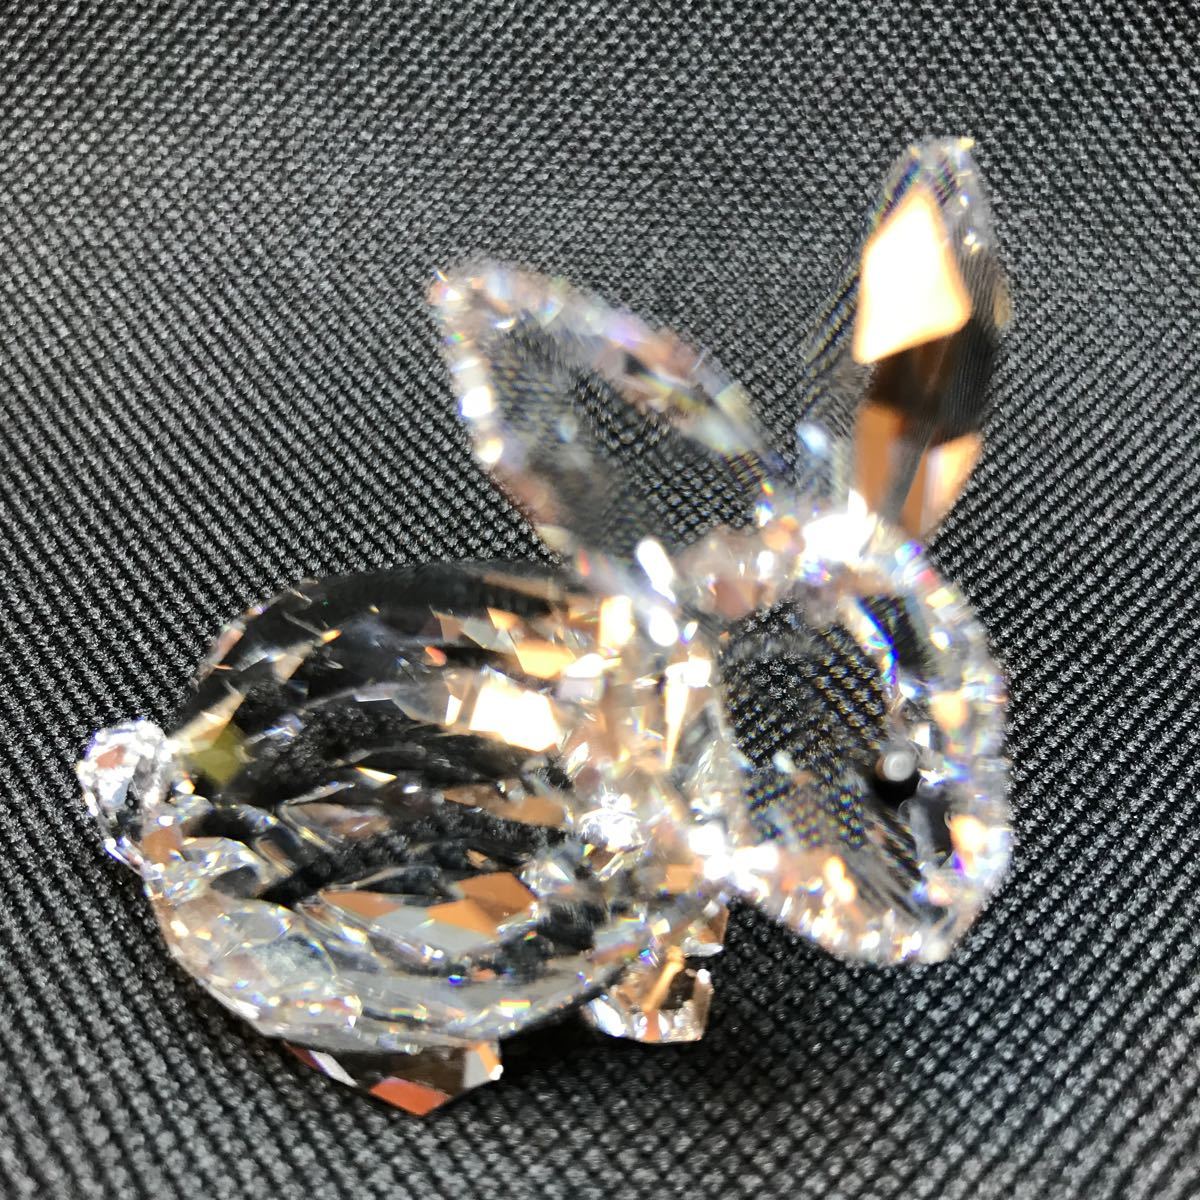  прекрасный товар! Swarovski SWAROVSKI crystal украшение Rabbit Sitting.... заяц размер :4.5 x 4.5 cm дешевый! редкий!